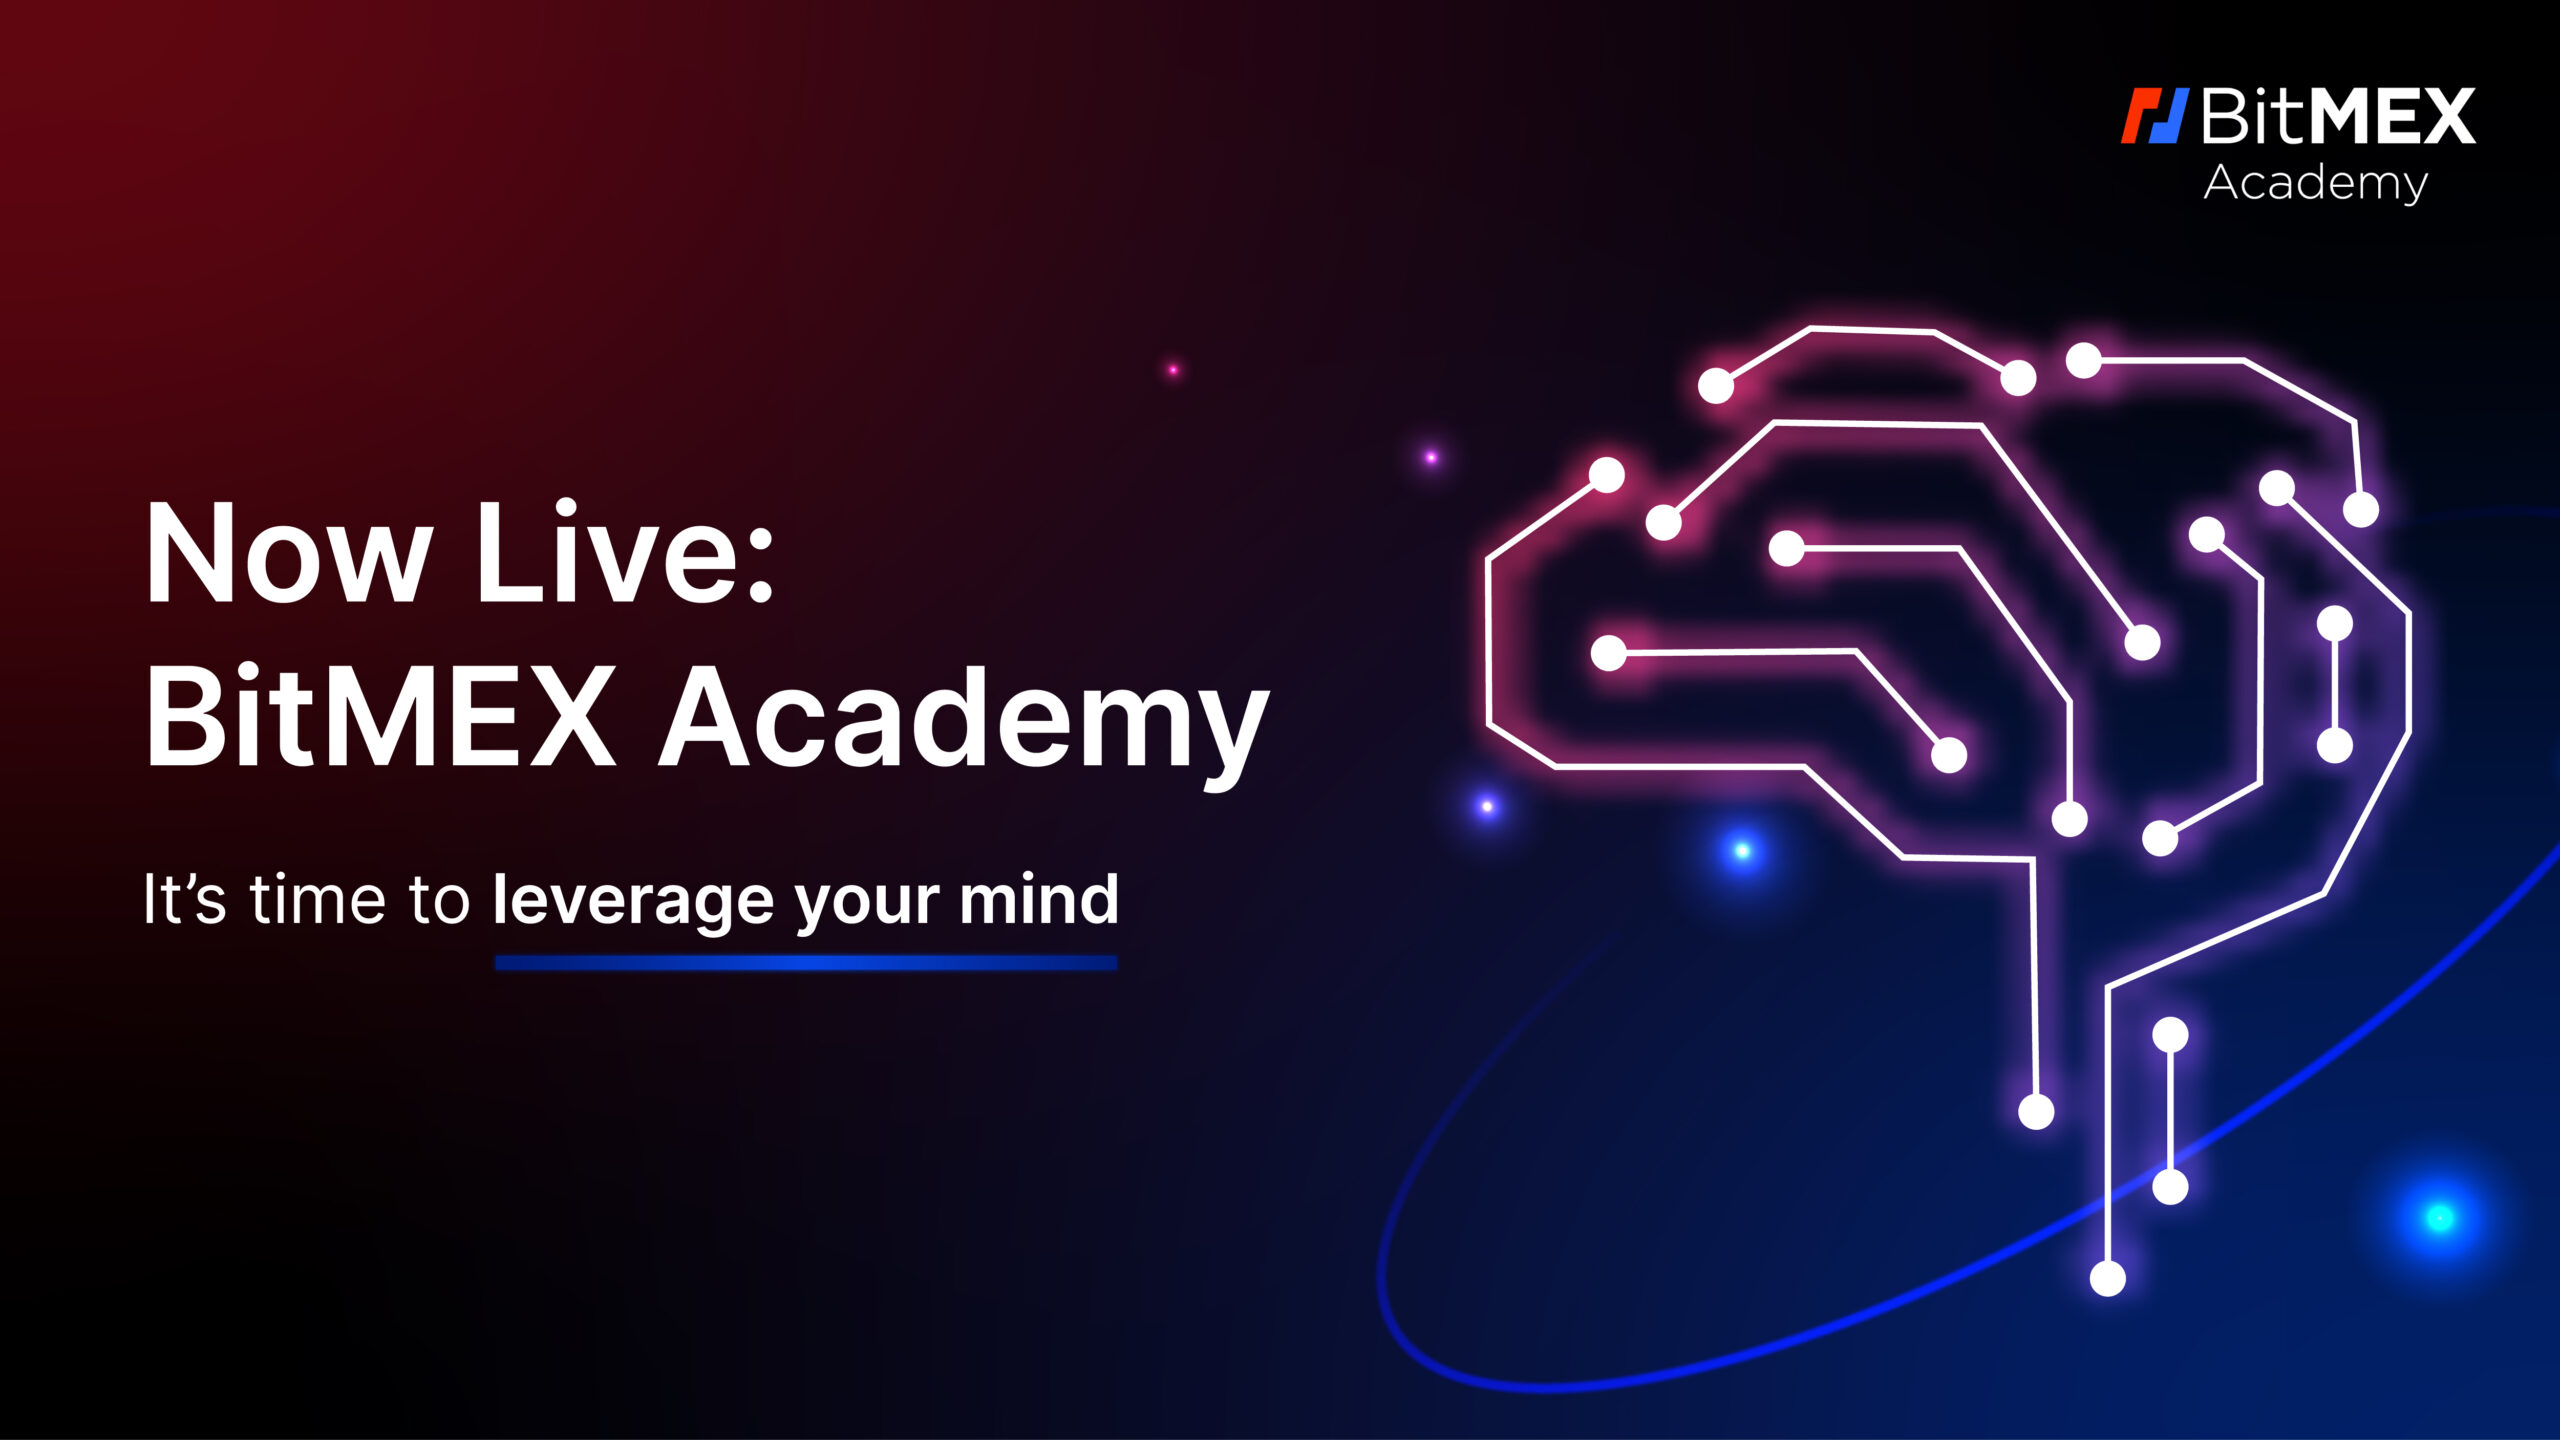 BitMEX Academy